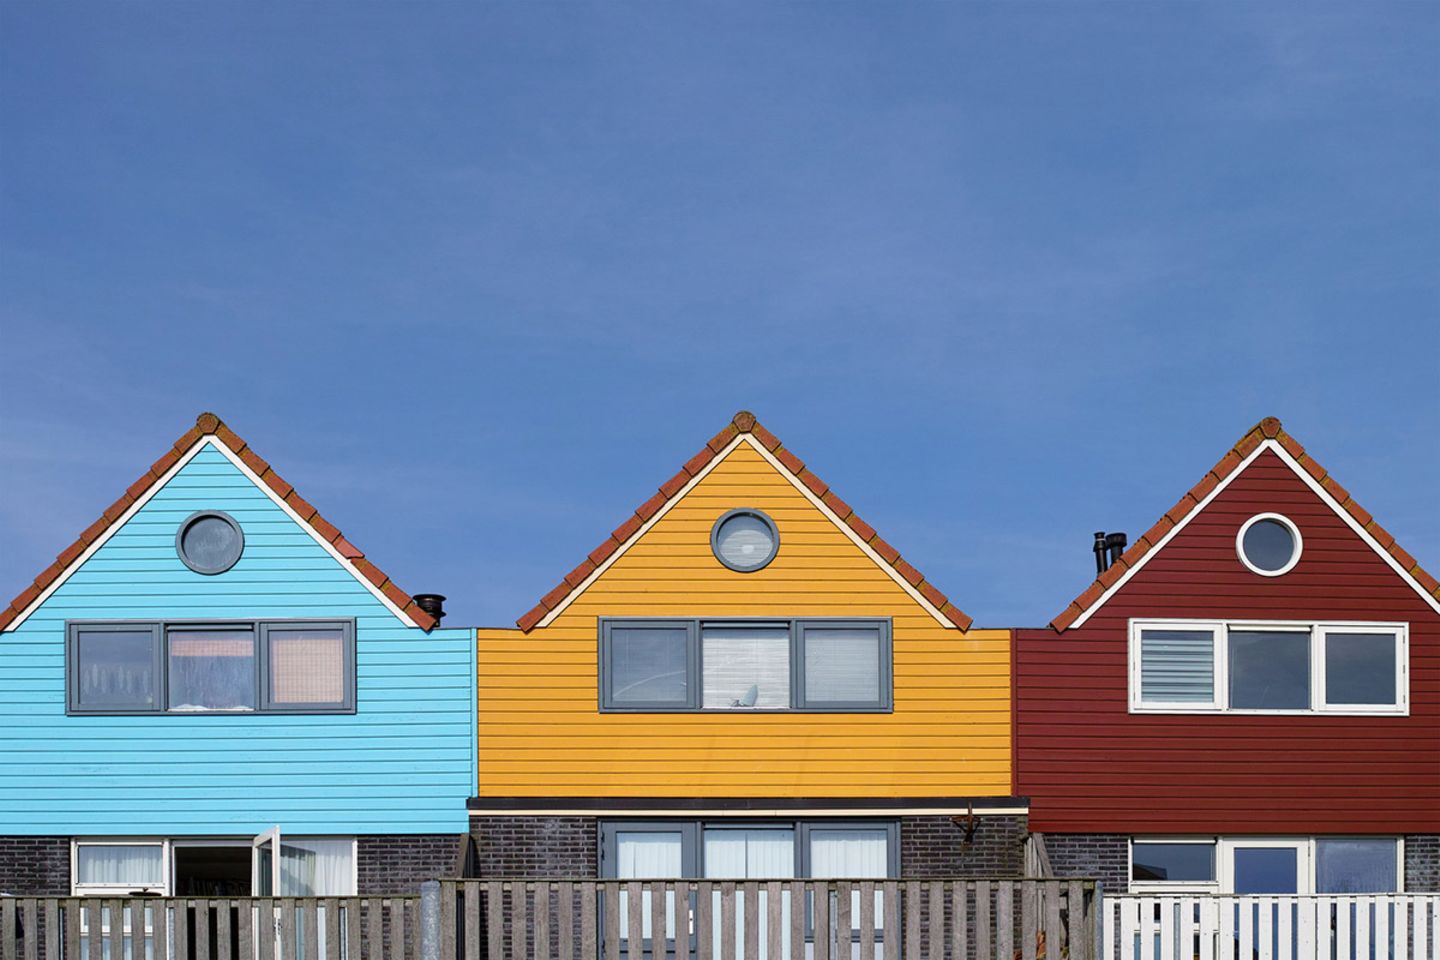 Drei Häuser in Hellblau, Gelb und Dunkelrot, die nebeneinander stehen